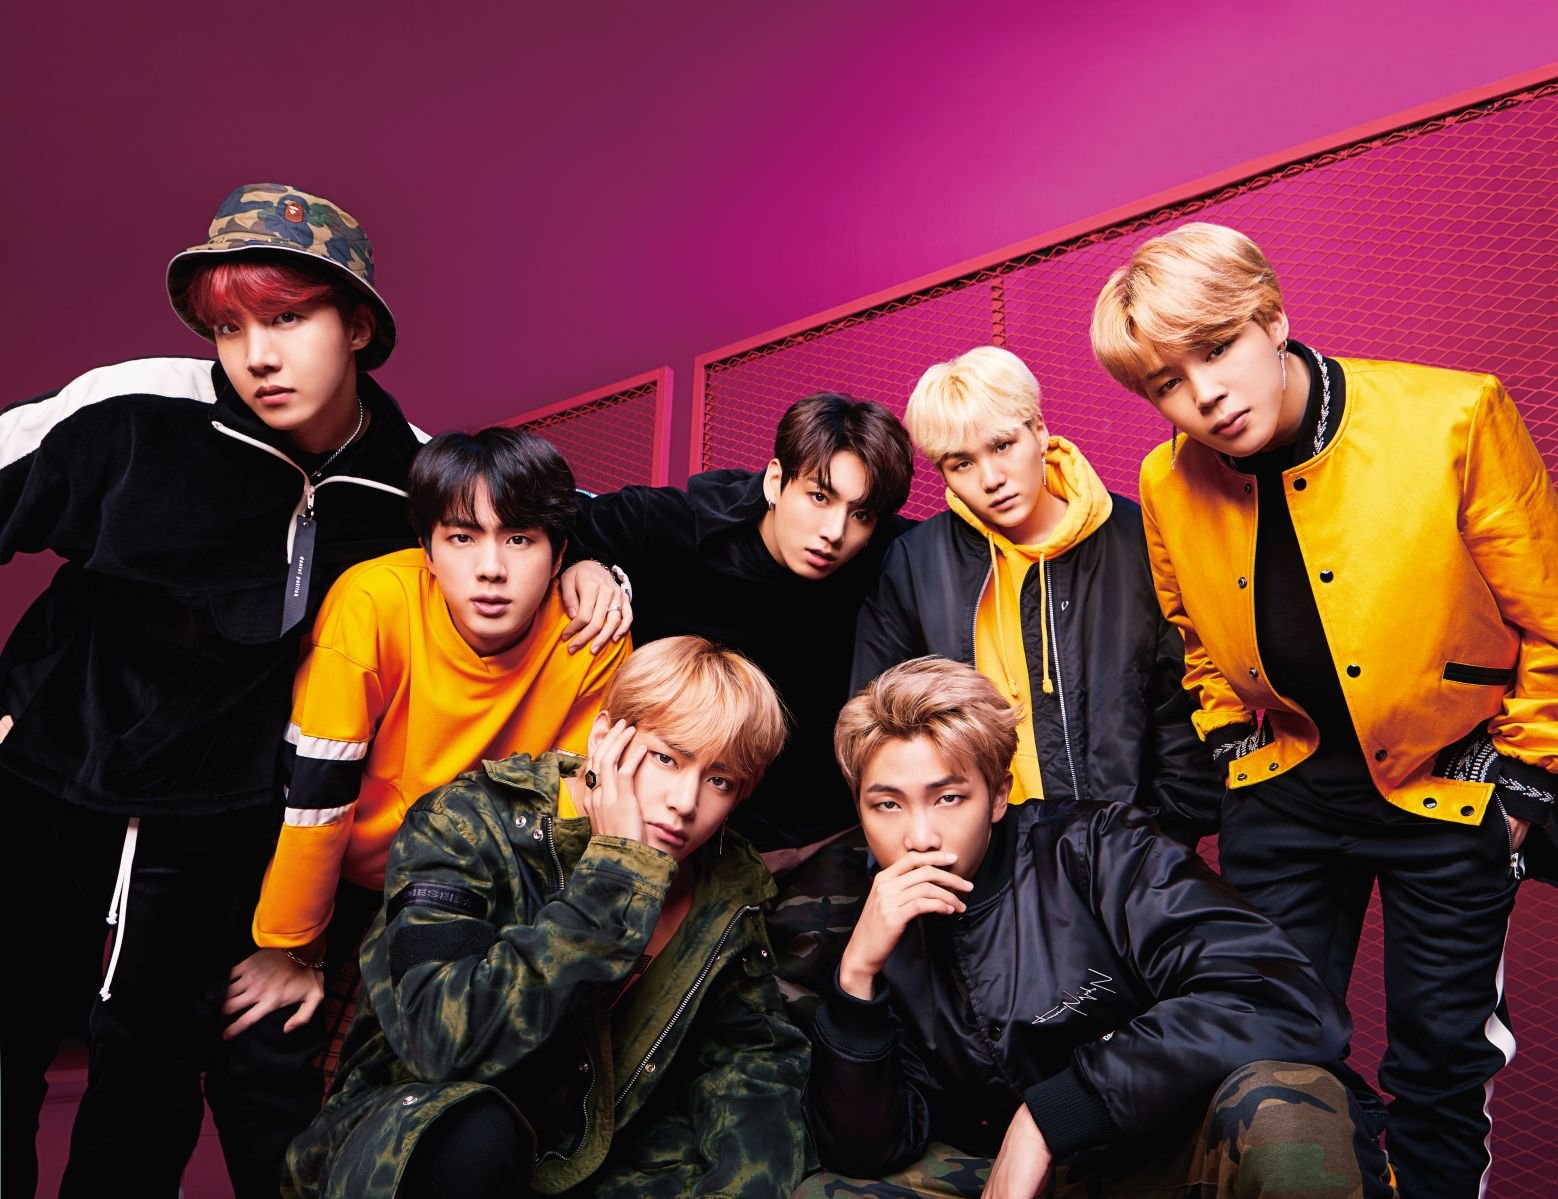 BTS: il gruppo coreano conquista il mondo con “FACE YOURSELF” il loro album cantato in giapponese dal 14 settembre disponibile in tutto il mondo